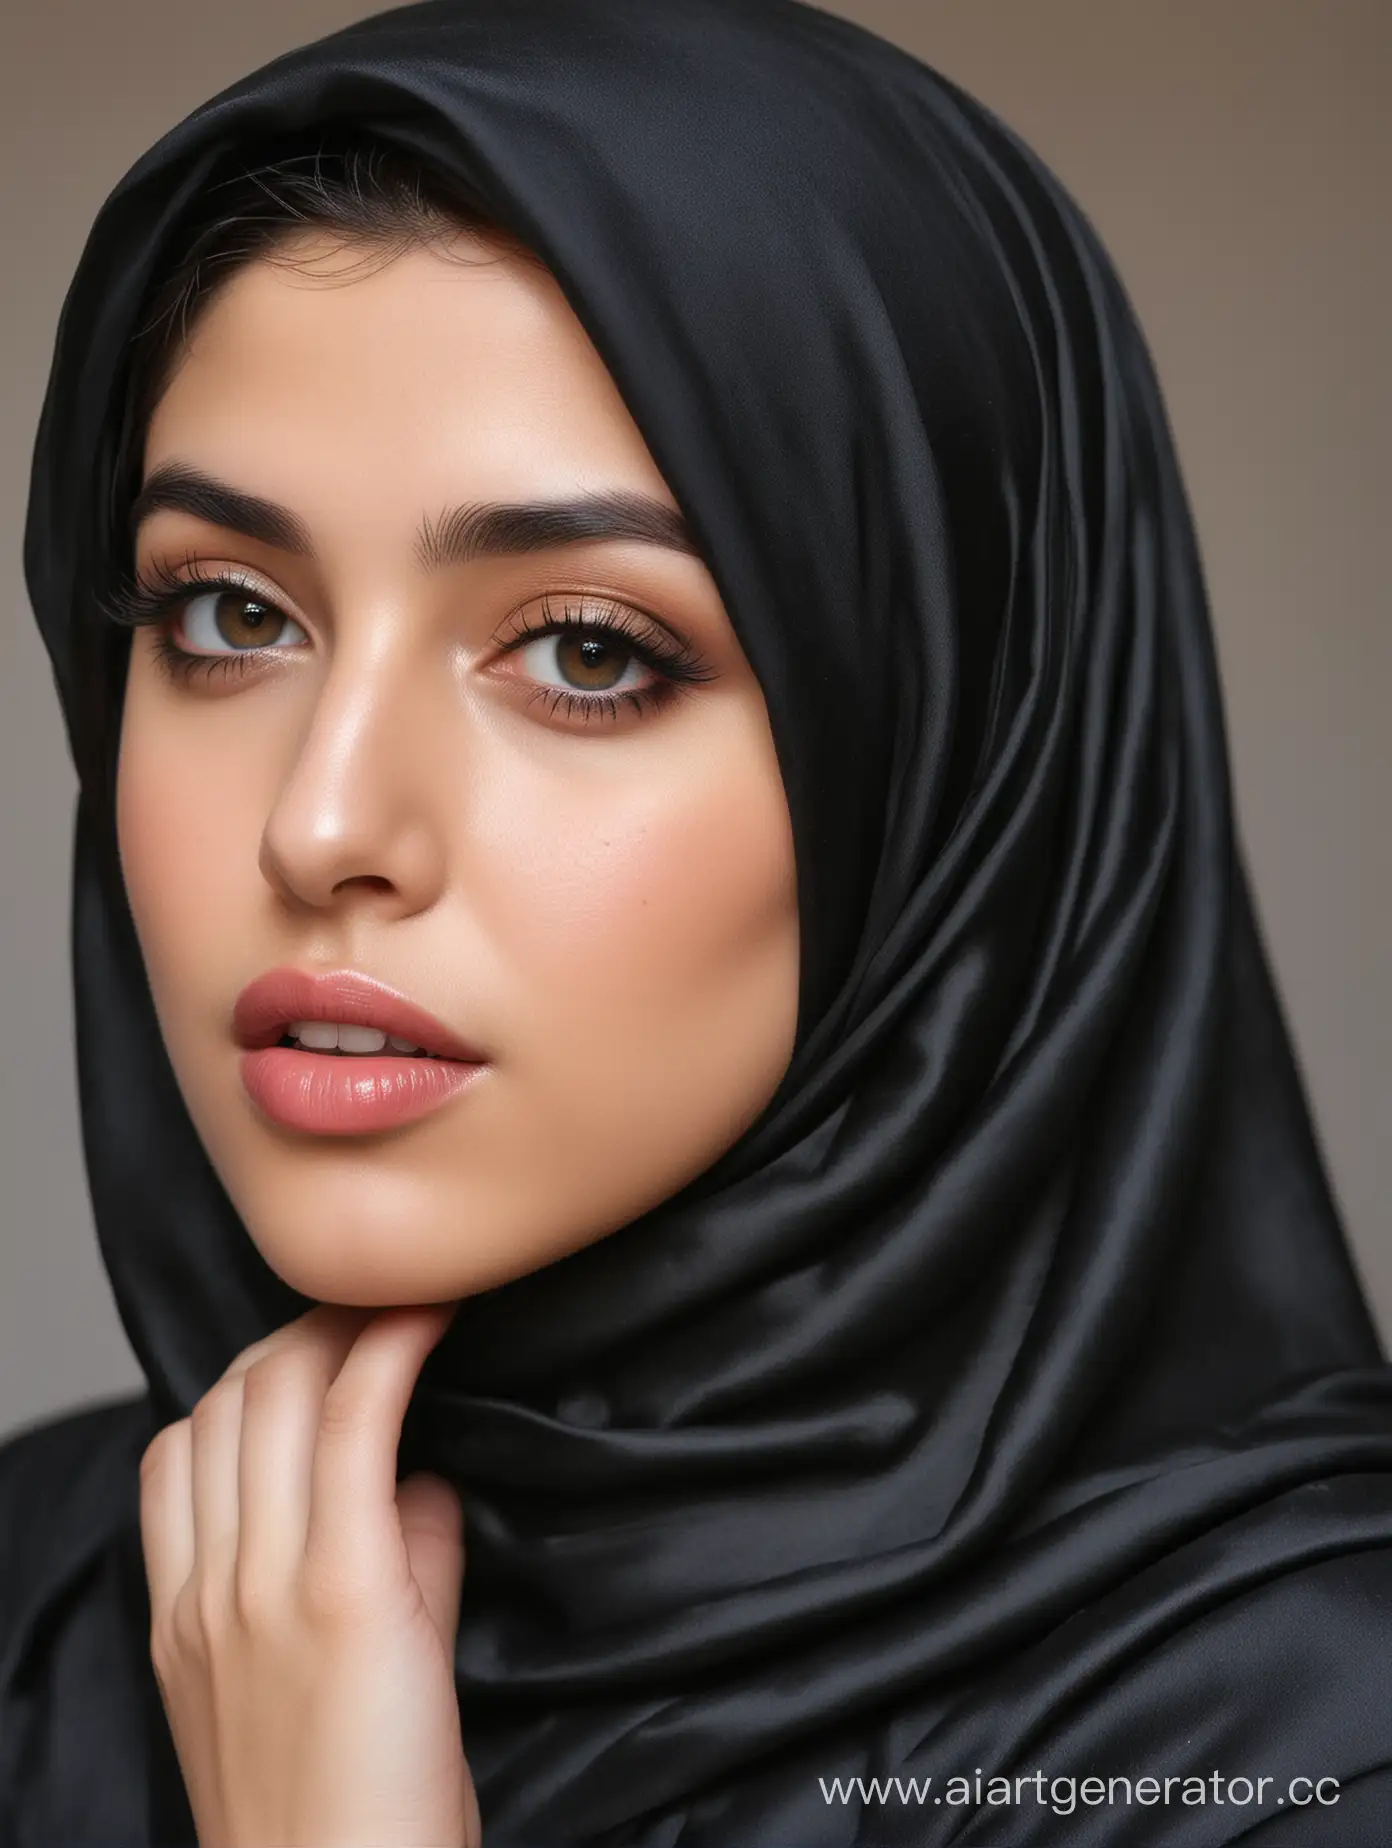 Иранская девушка, на ней шелковый хиджаб черного цвета, у неё пышные губы и большая грудь